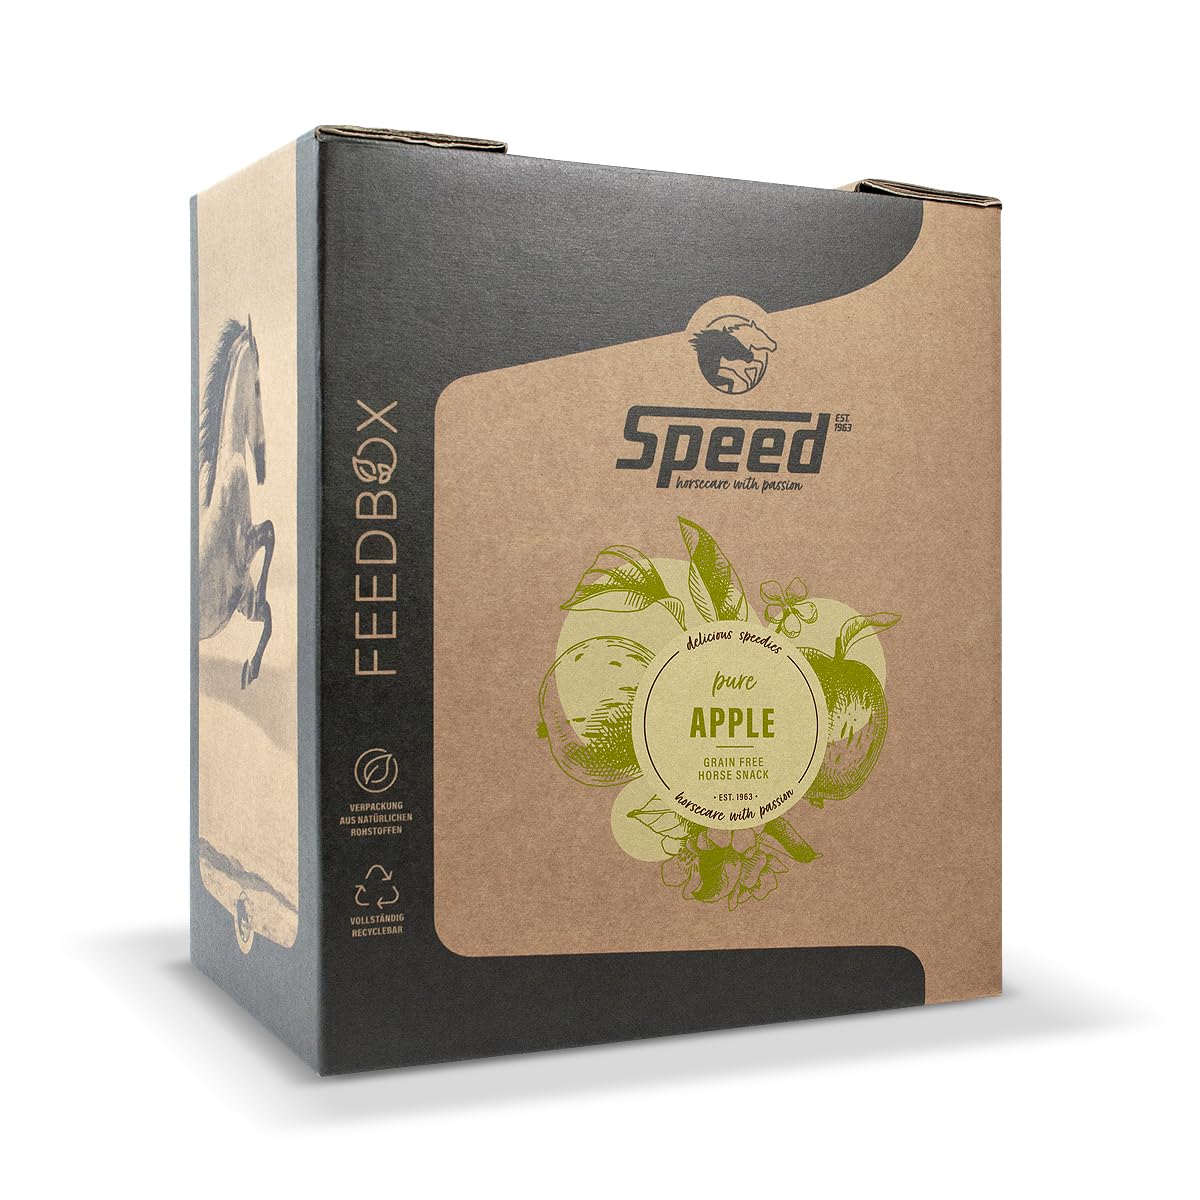 Speed Delicious speedies Pure Apple FEEDBOX, 8 kg, Leckerli mit Apfel Geschmack, leckeres und getreidefreies Ergänzungsfutter für Pferde